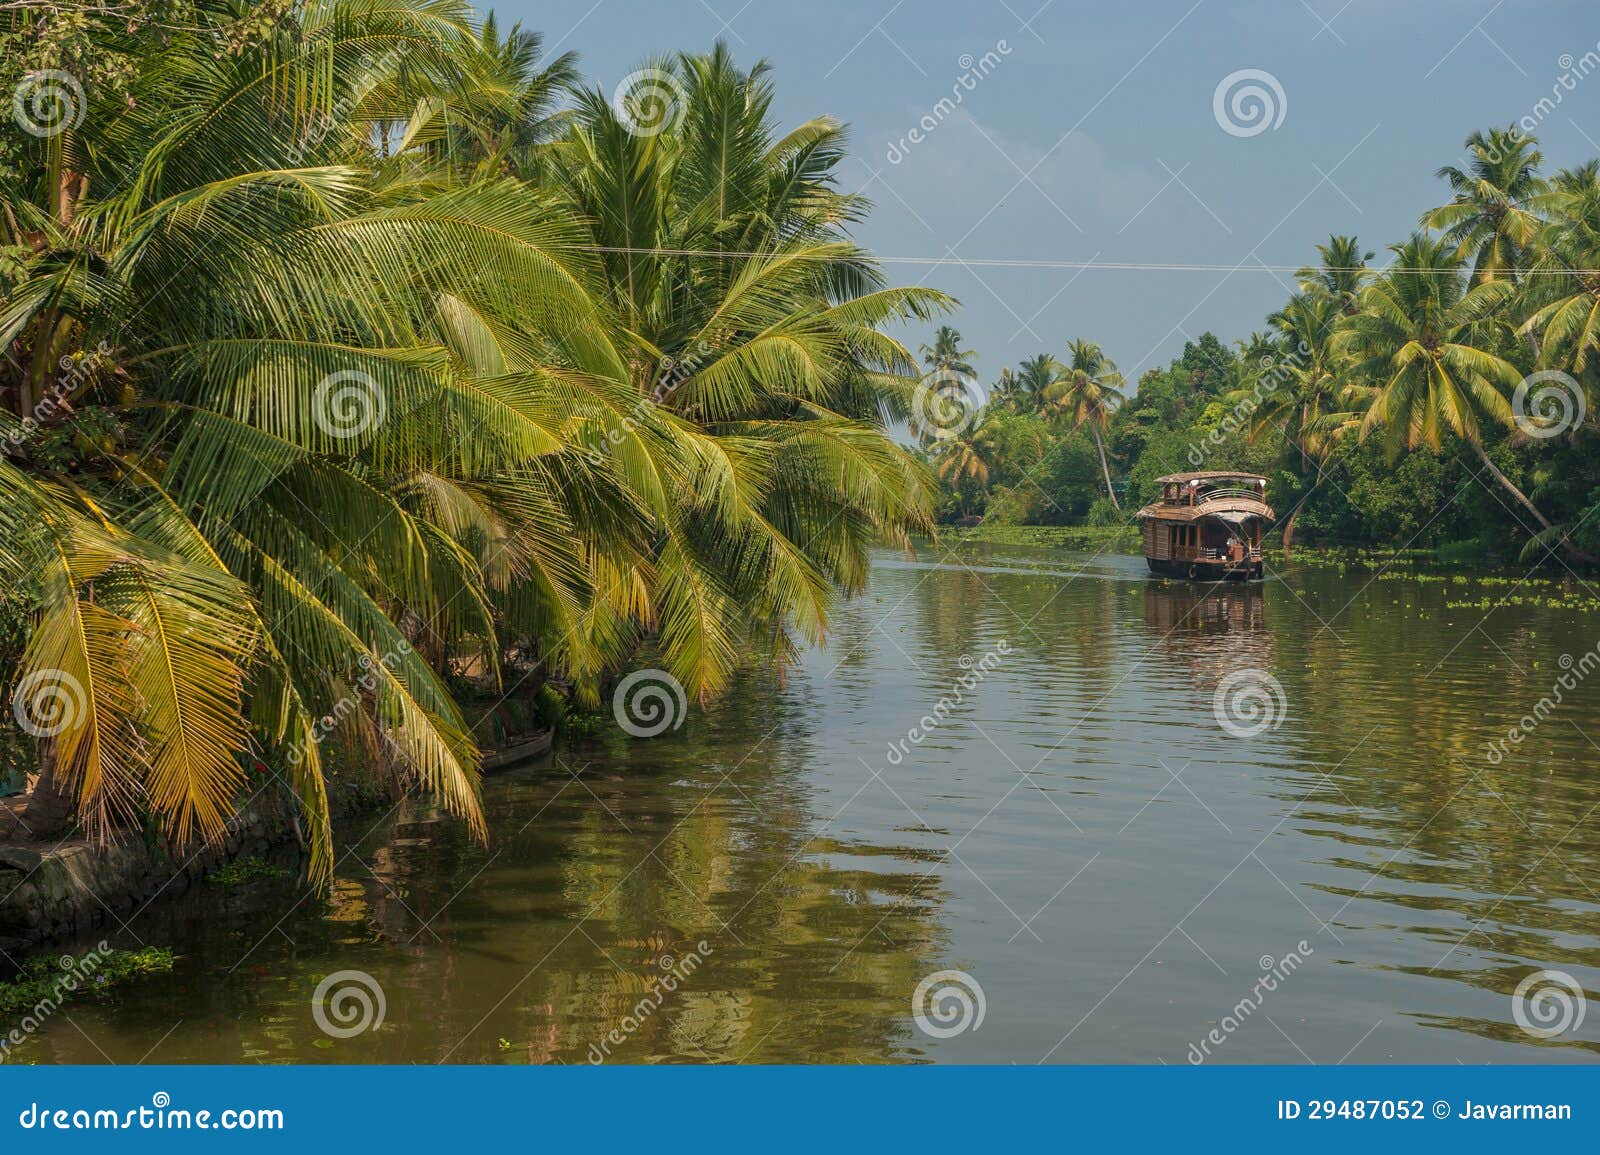 backwaters of kerala, india